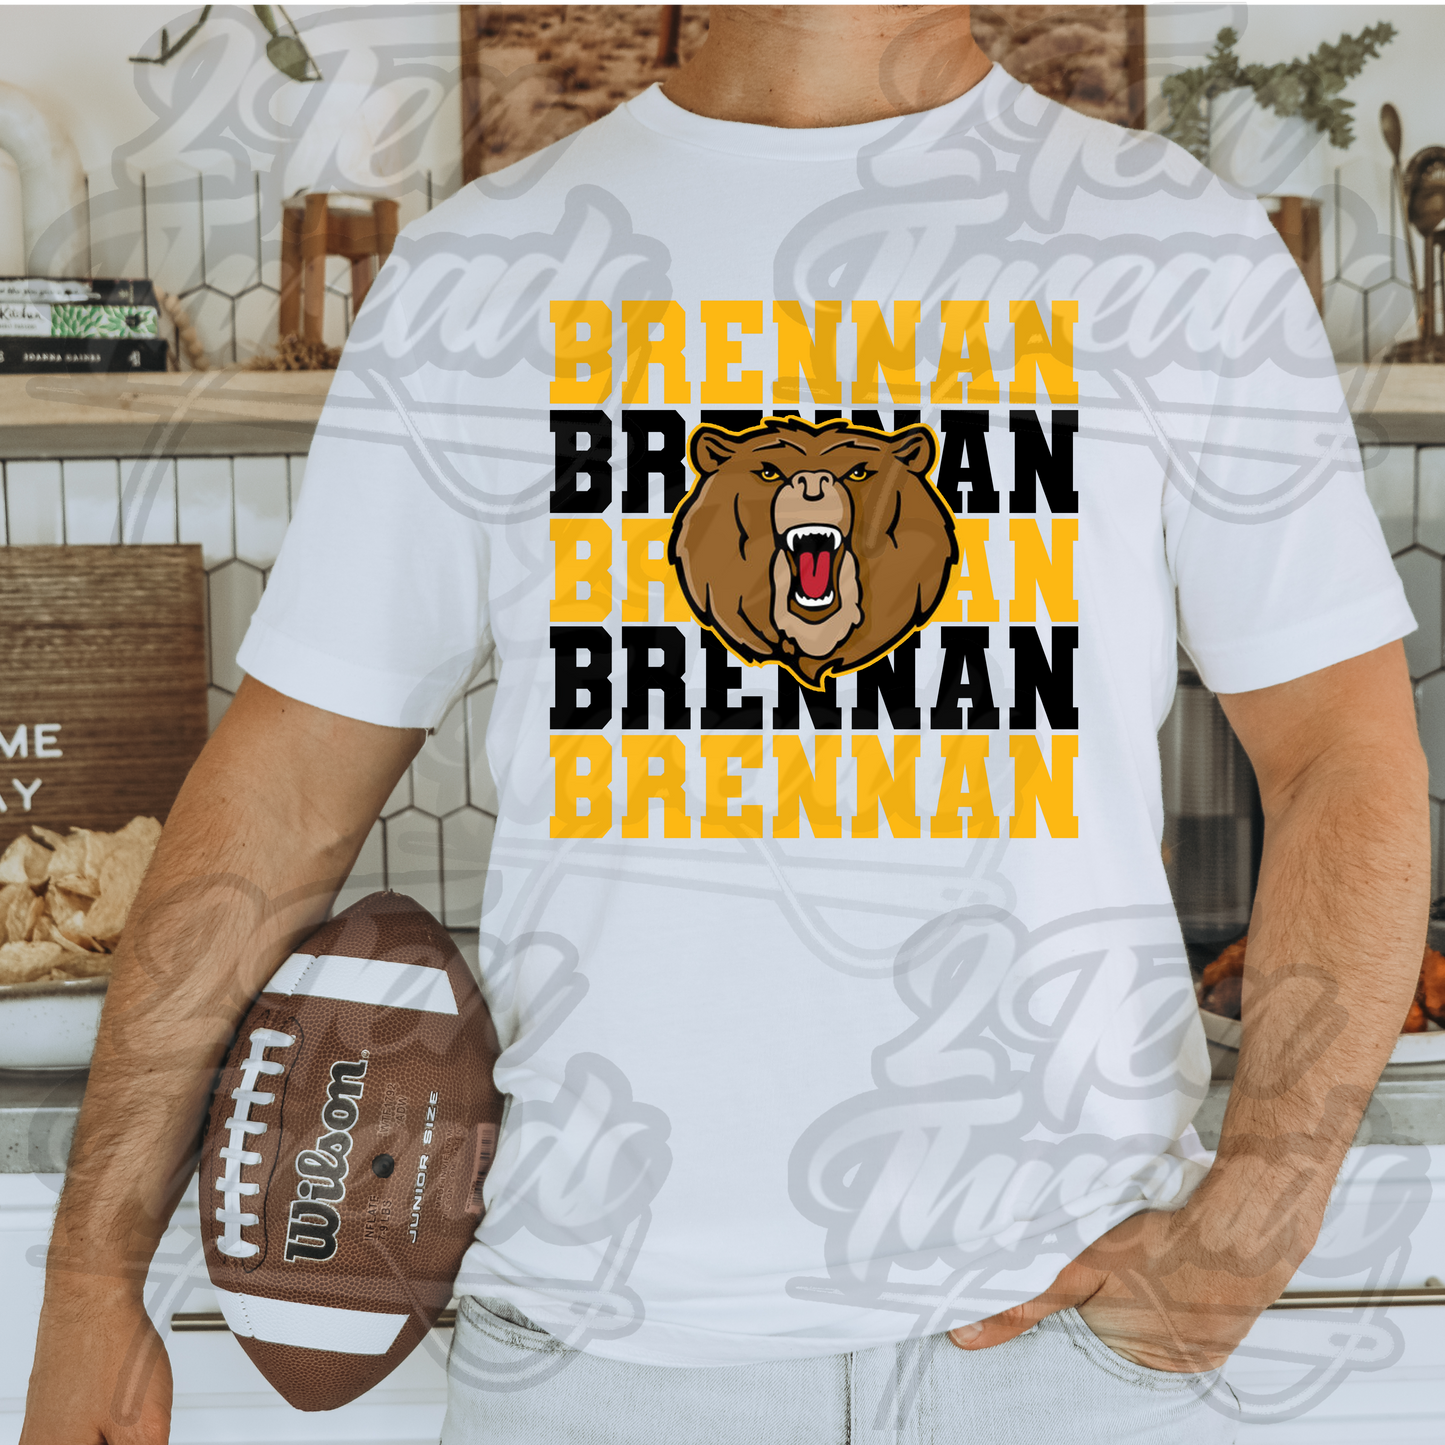 Brennan High School Football